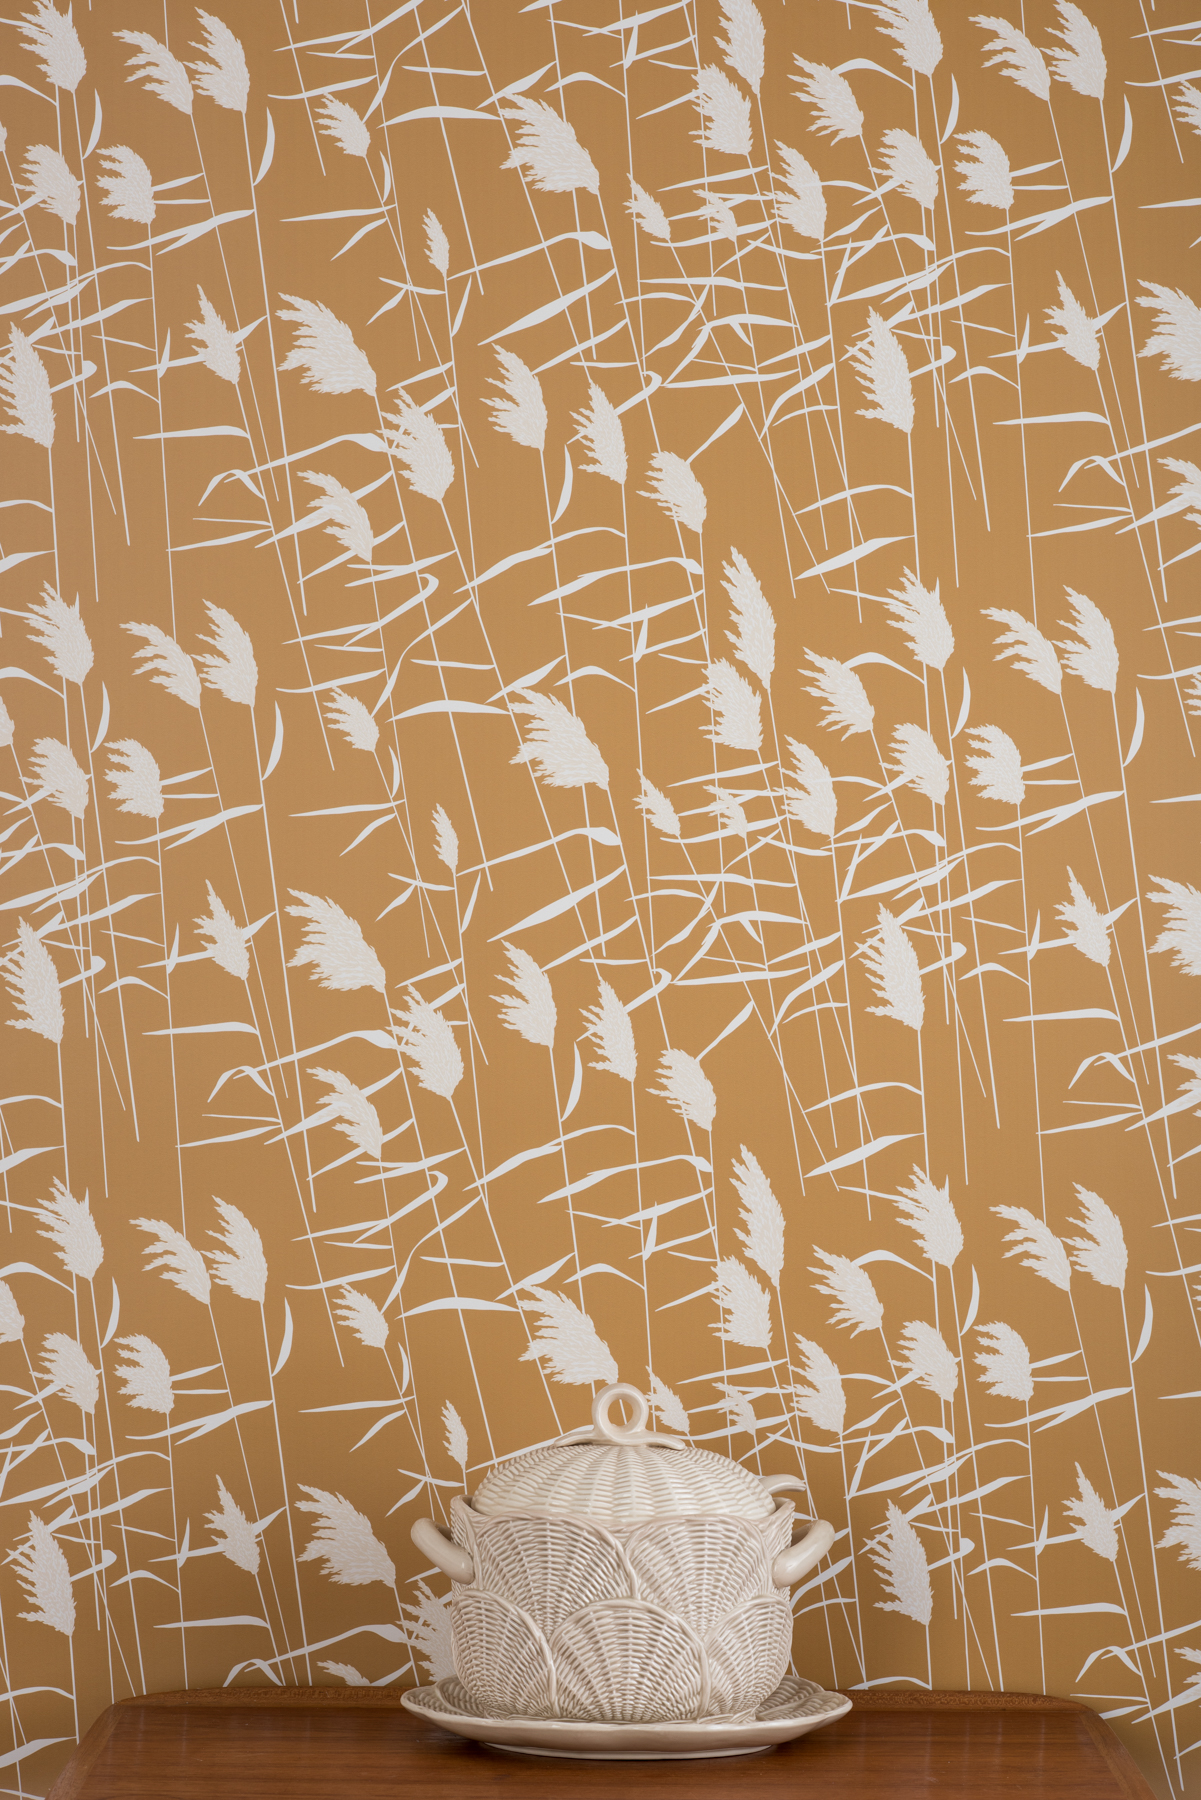 Kate Golding Grasses (Dusk) wallpaper // Modern wallcoverings and interior decor.